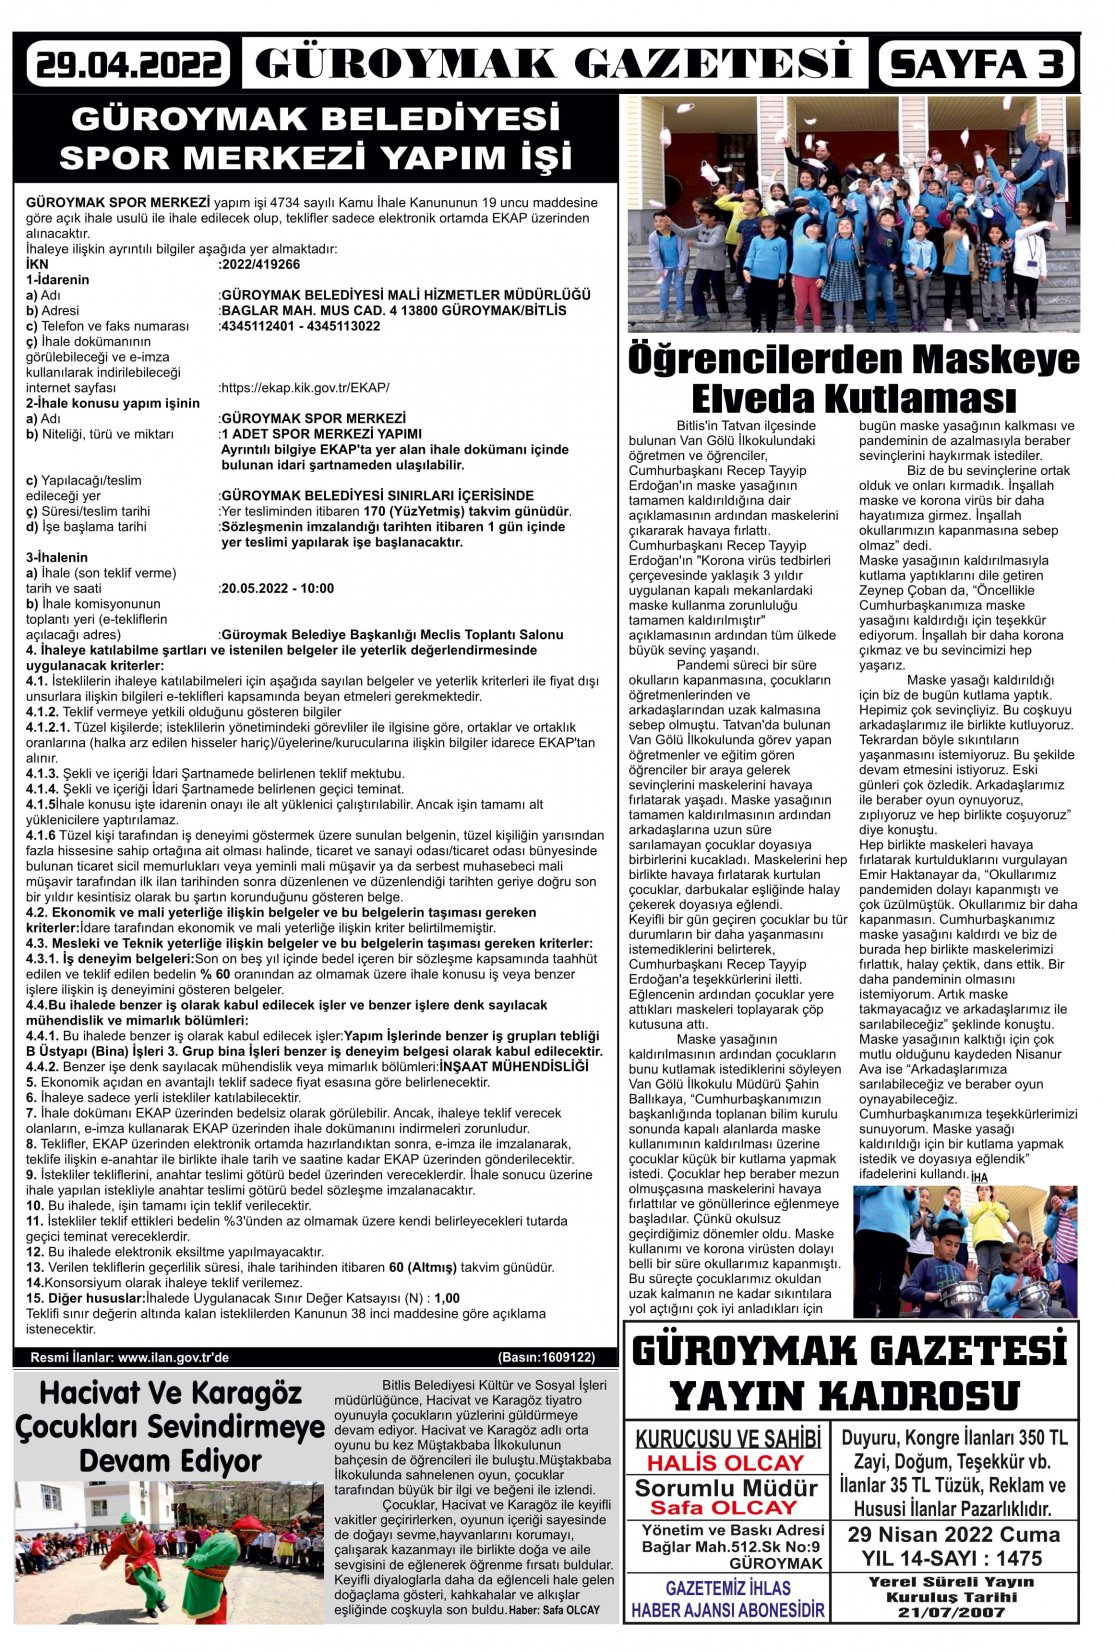 Güroymak Gazetesi 3.jpg Sayılı Gazete Küpürü